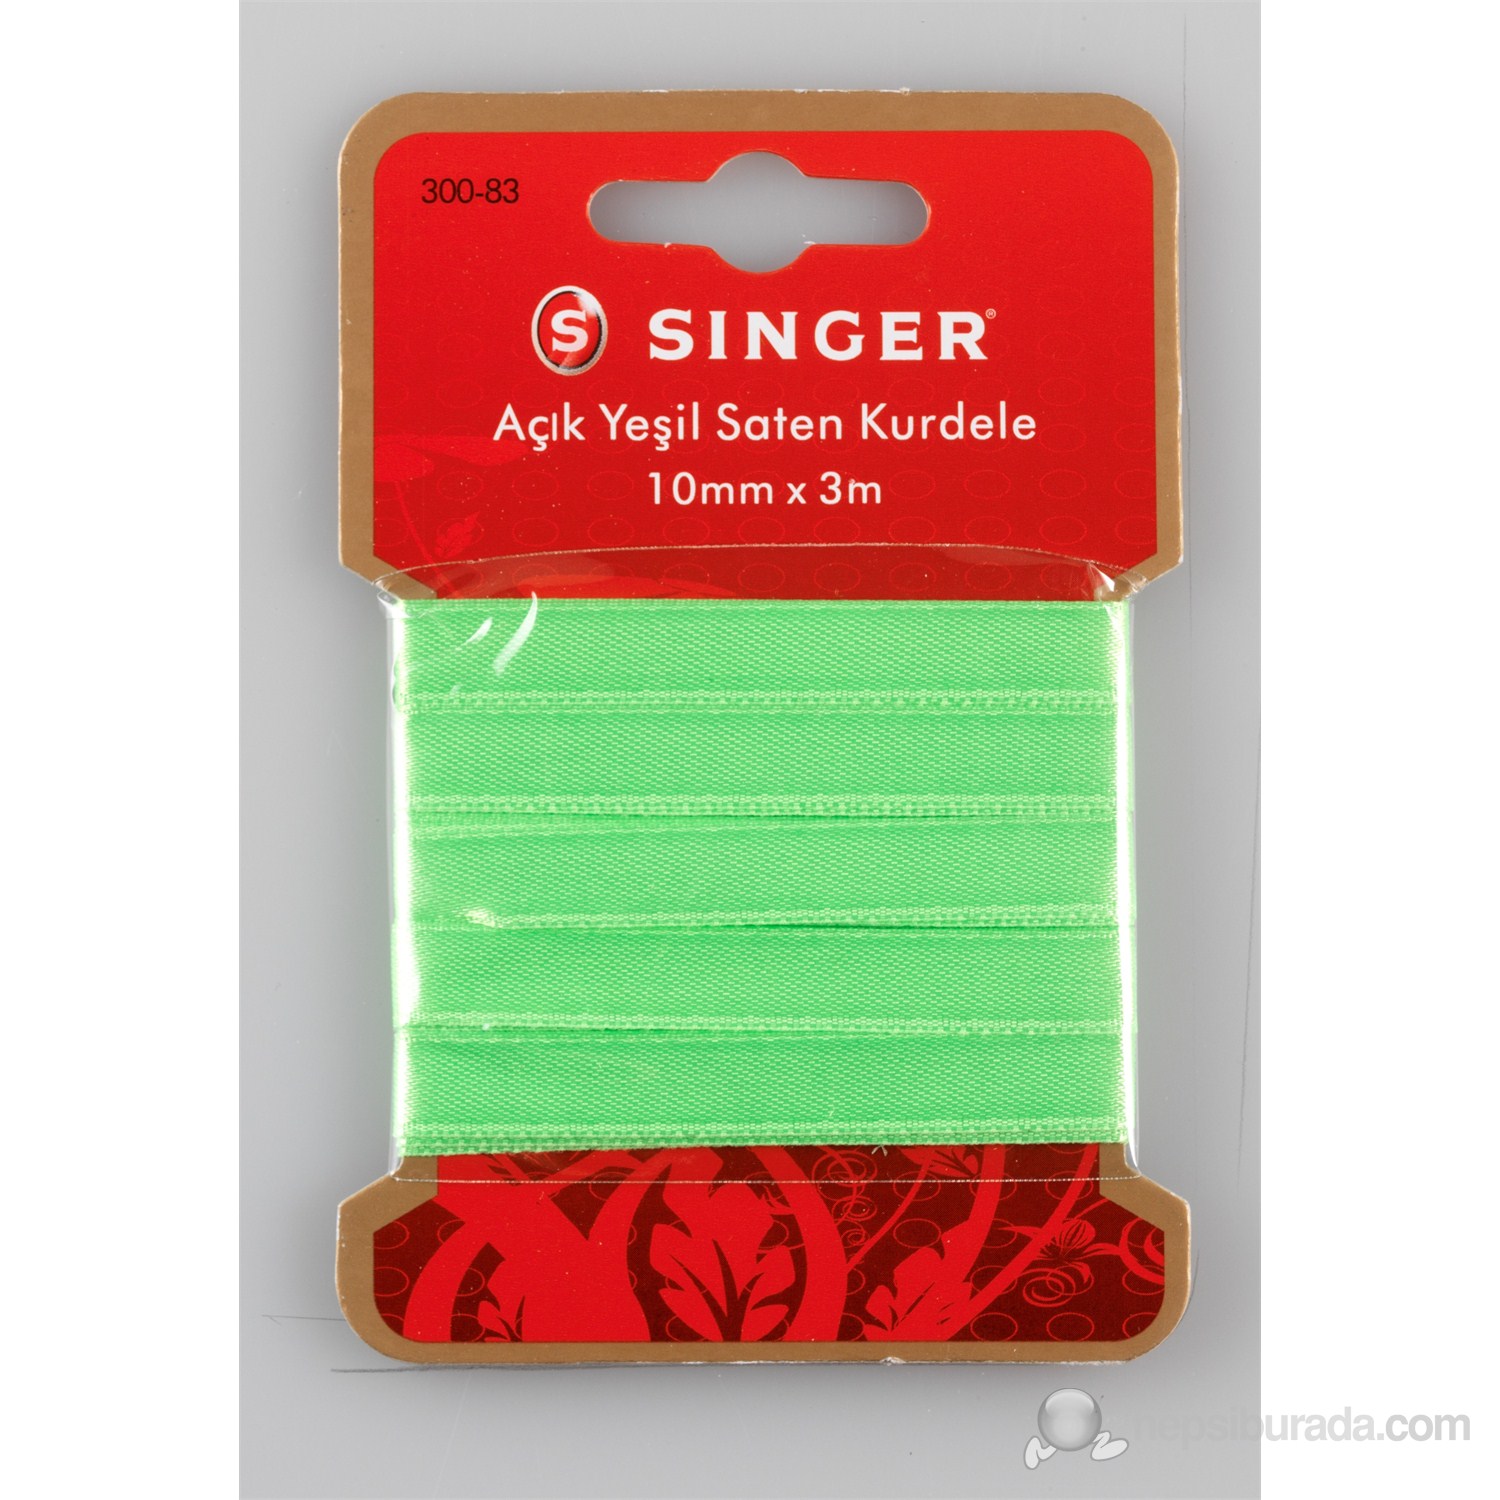 Singer 300-83 Açık Yeşil Saten Kurdele (10 mm x 3 m)